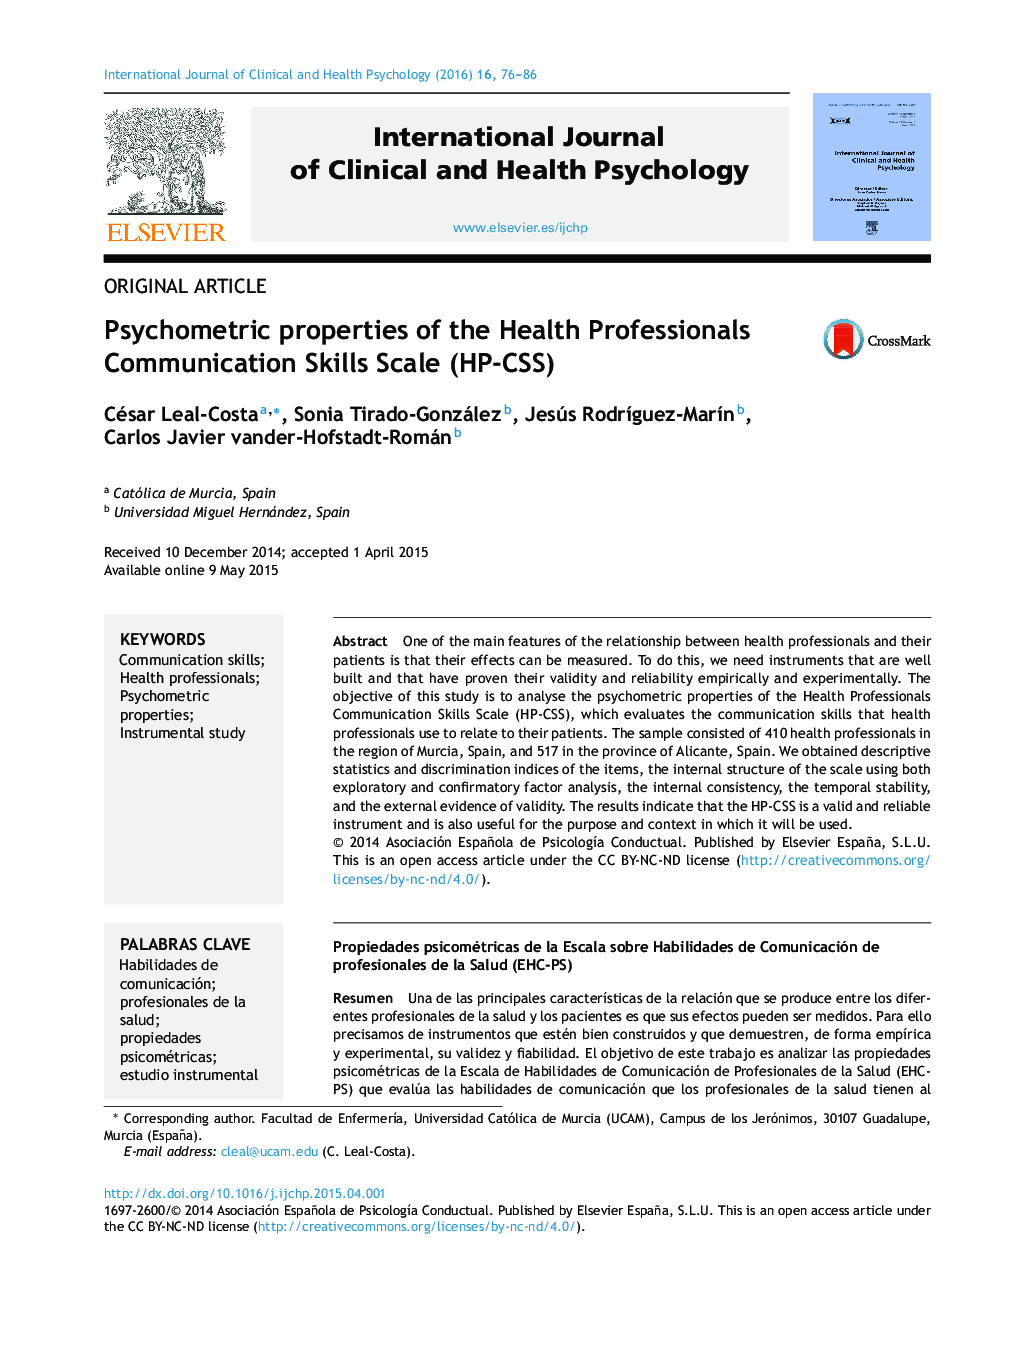 ویژگی های روان سنجی مقیاس مهارت های ارتباطی حرفه ای سلامت (HP-CSS)